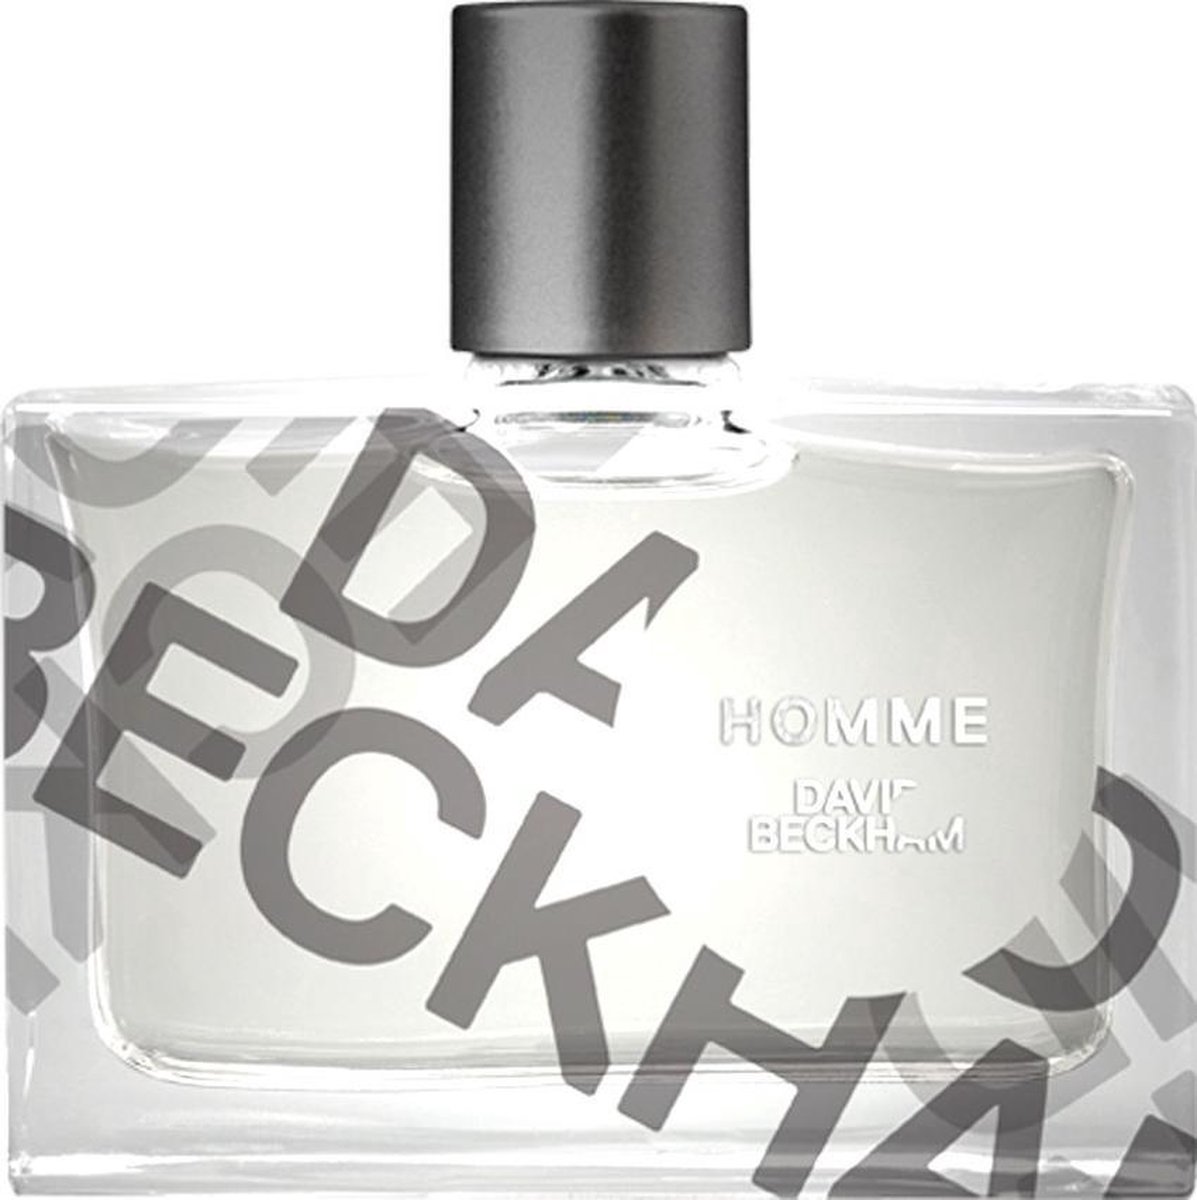 David Beckham Classic 50 ml - Eau de Toilette - Parfum Homme | bol